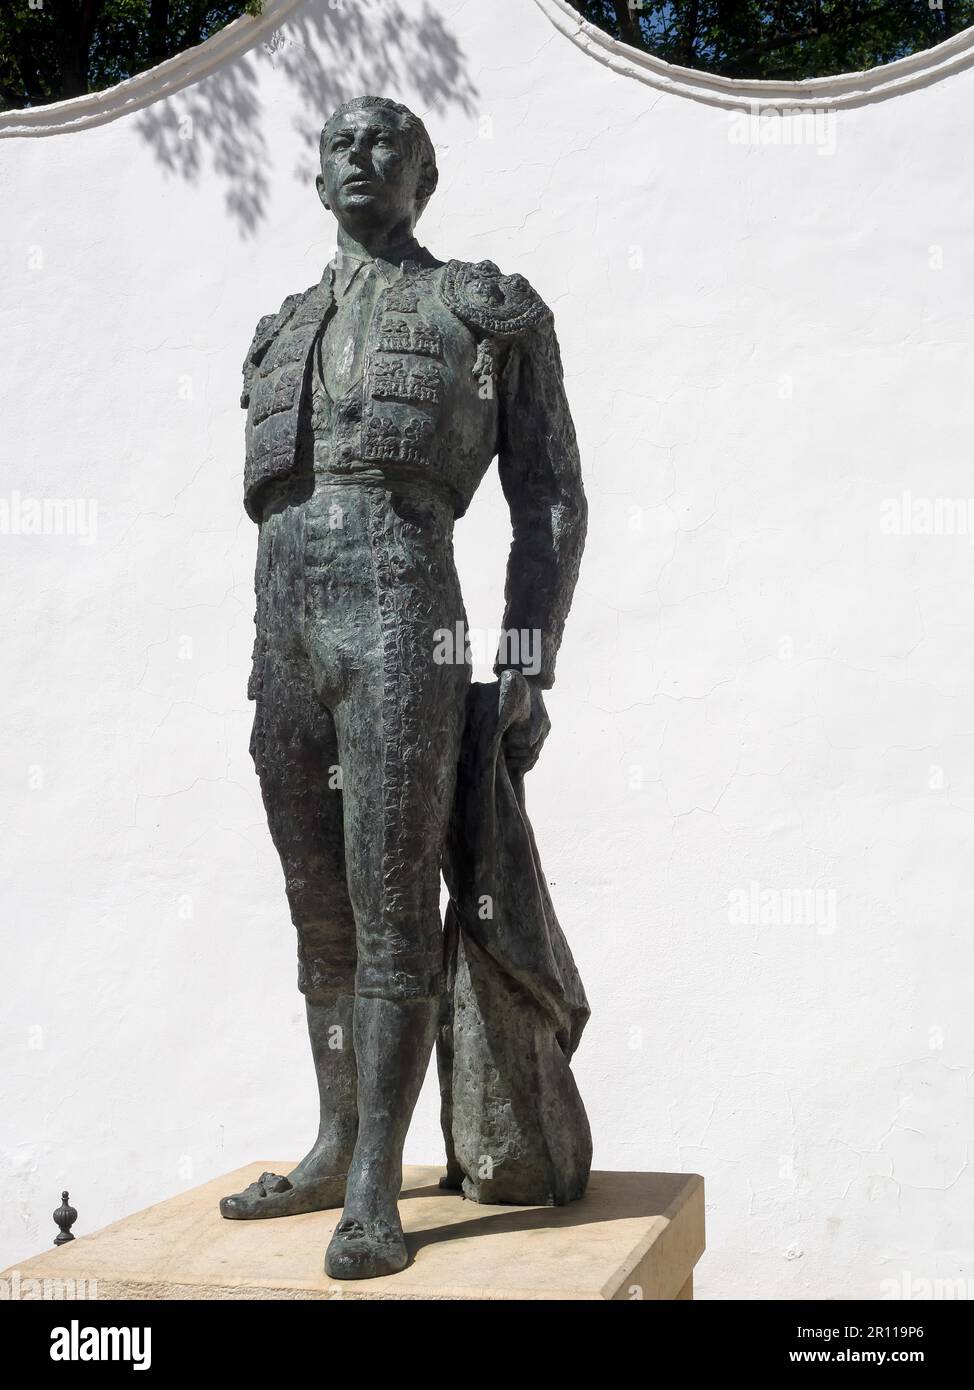 RONDA, ANDALOUSIE/ESPAGNE - MAI 8 : Statue de l'arènes Antonio Ordonez à Ronda Andalucia Espagne sur 8 mai 2014 Banque D'Images